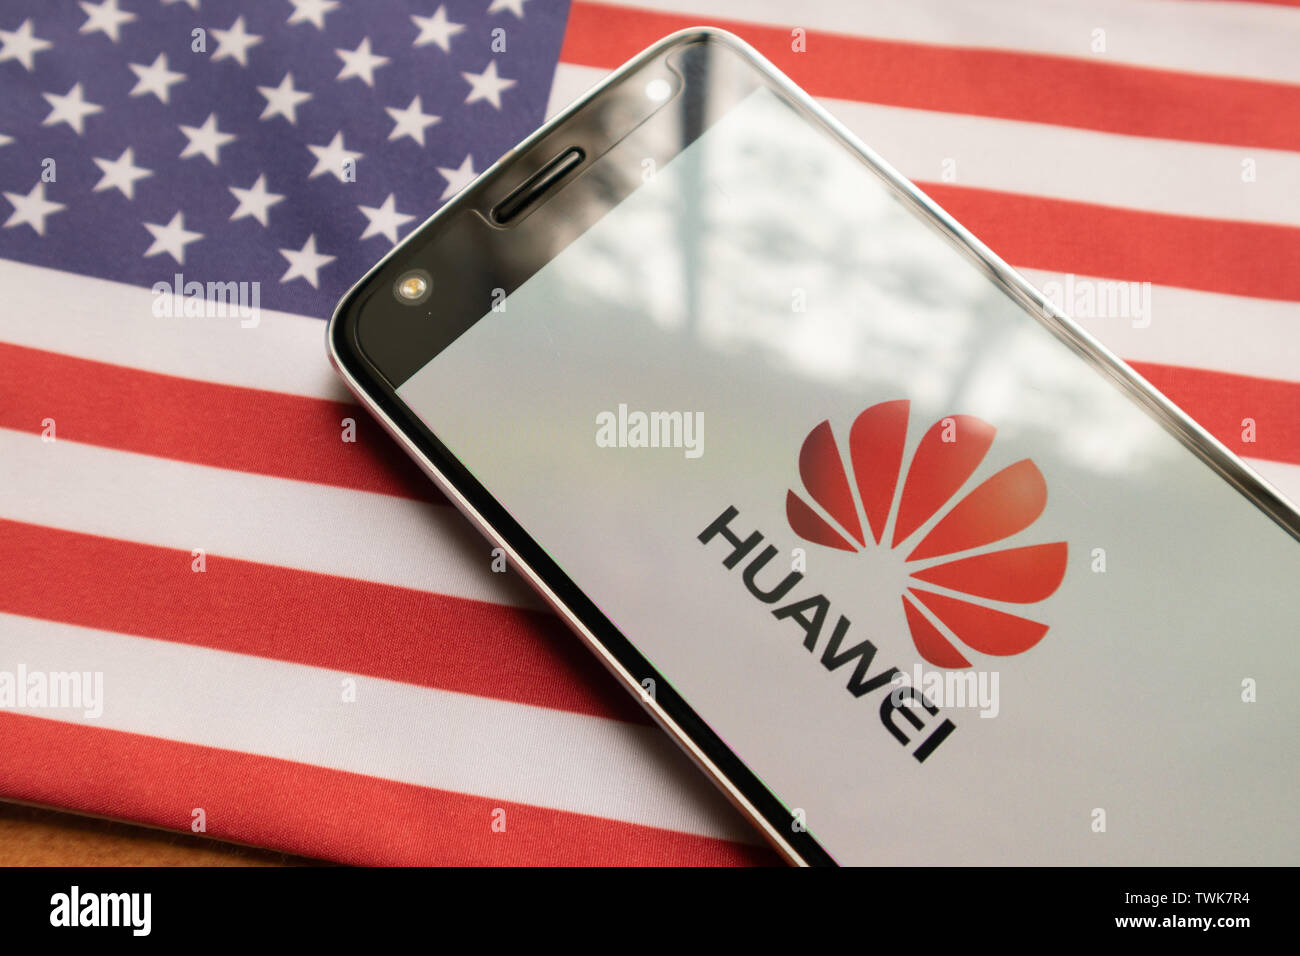 Maski, Inde - le 21 juin 2019 : Huawei logo sur écran de mobile sur le drapeau américain. Banque D'Images